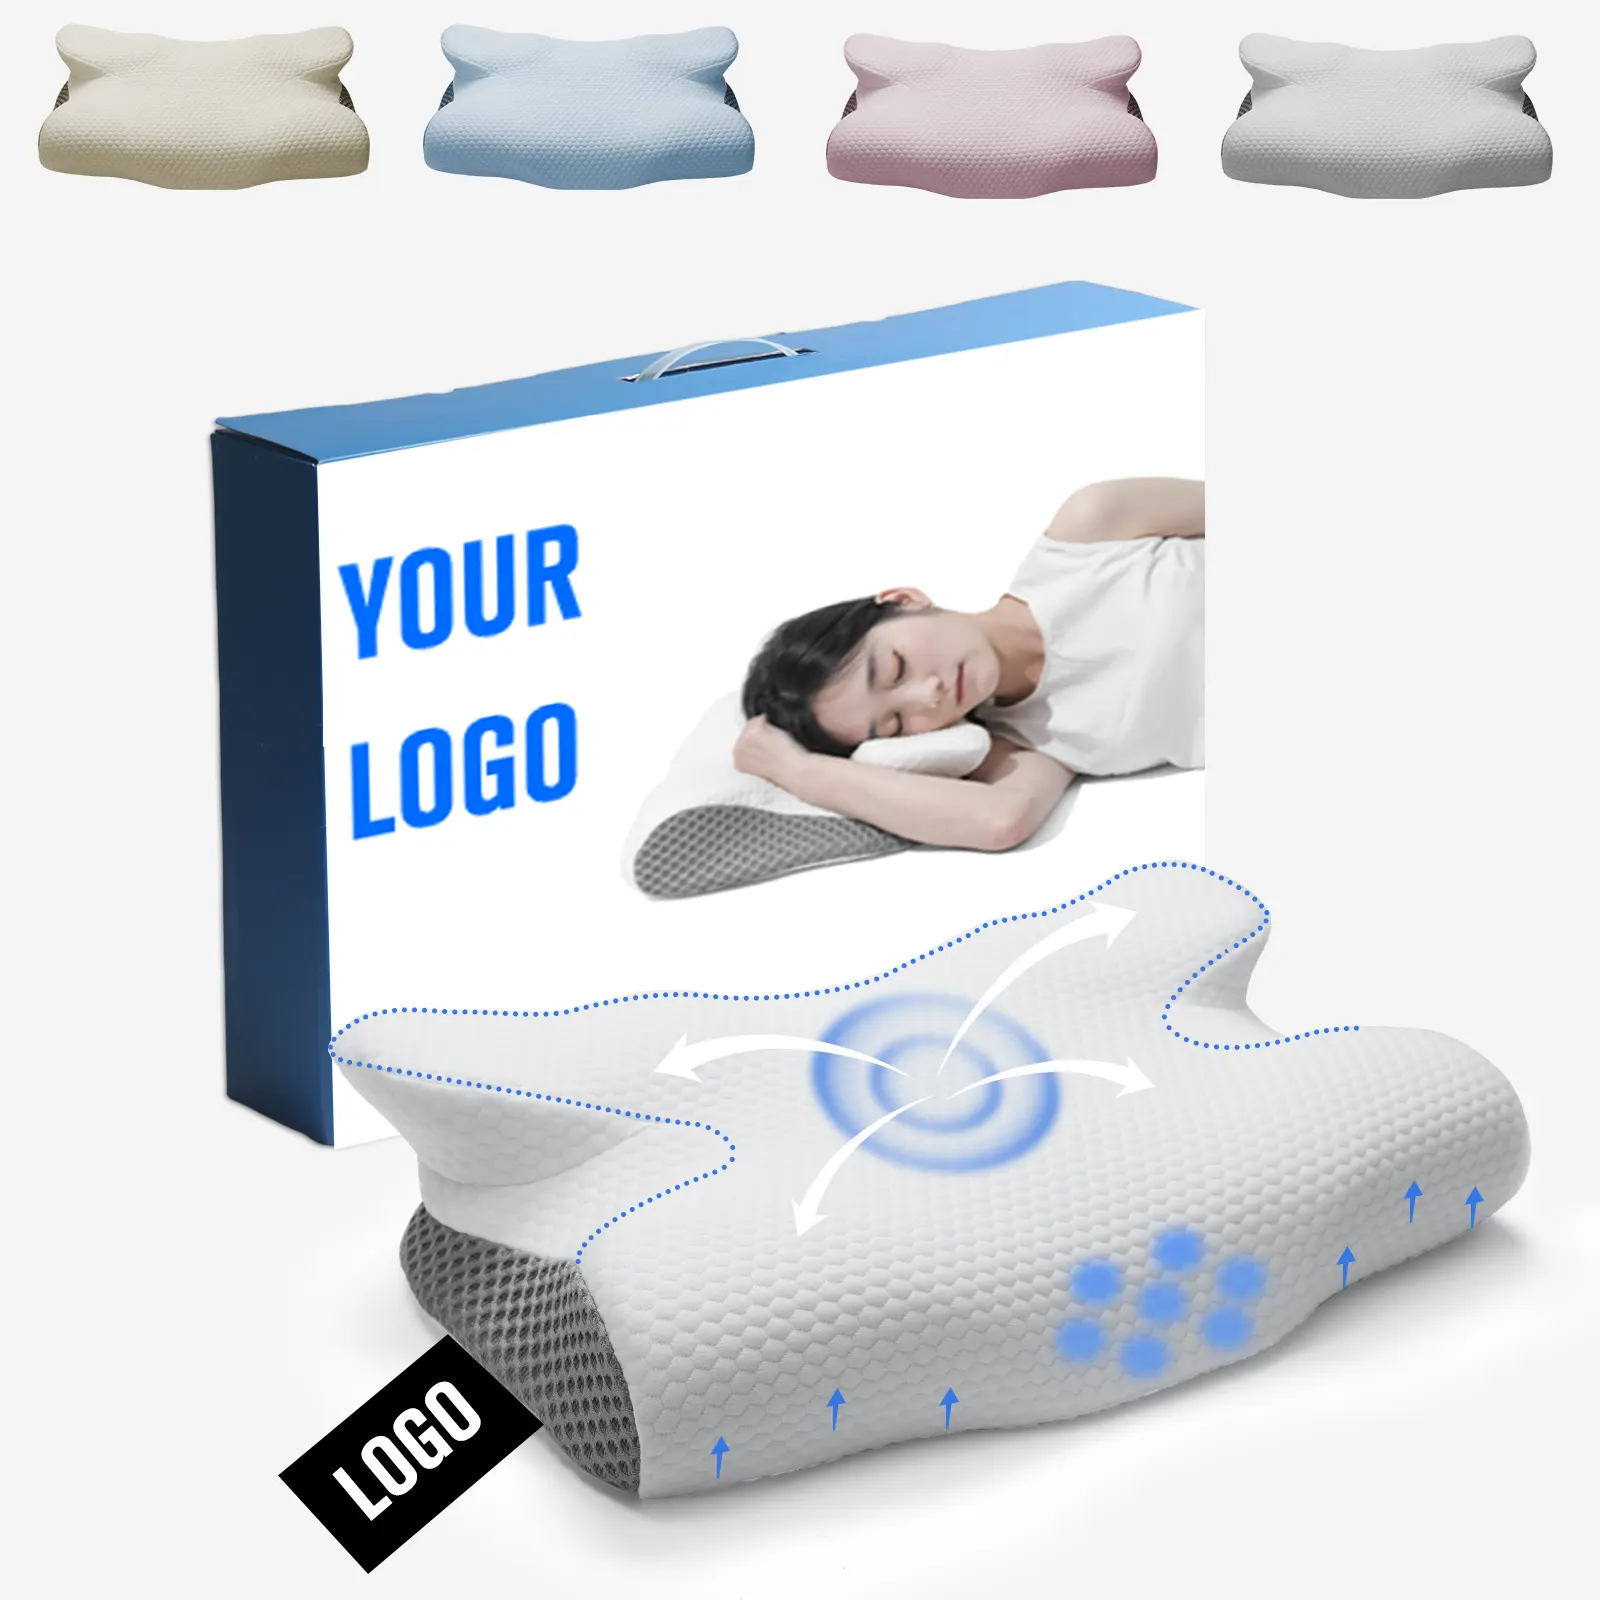 Produttore HNOS cuscino cervico contorno Custom forma Logo letto Memory Foam cuscino ortopedico per alleviare il dolore al collo